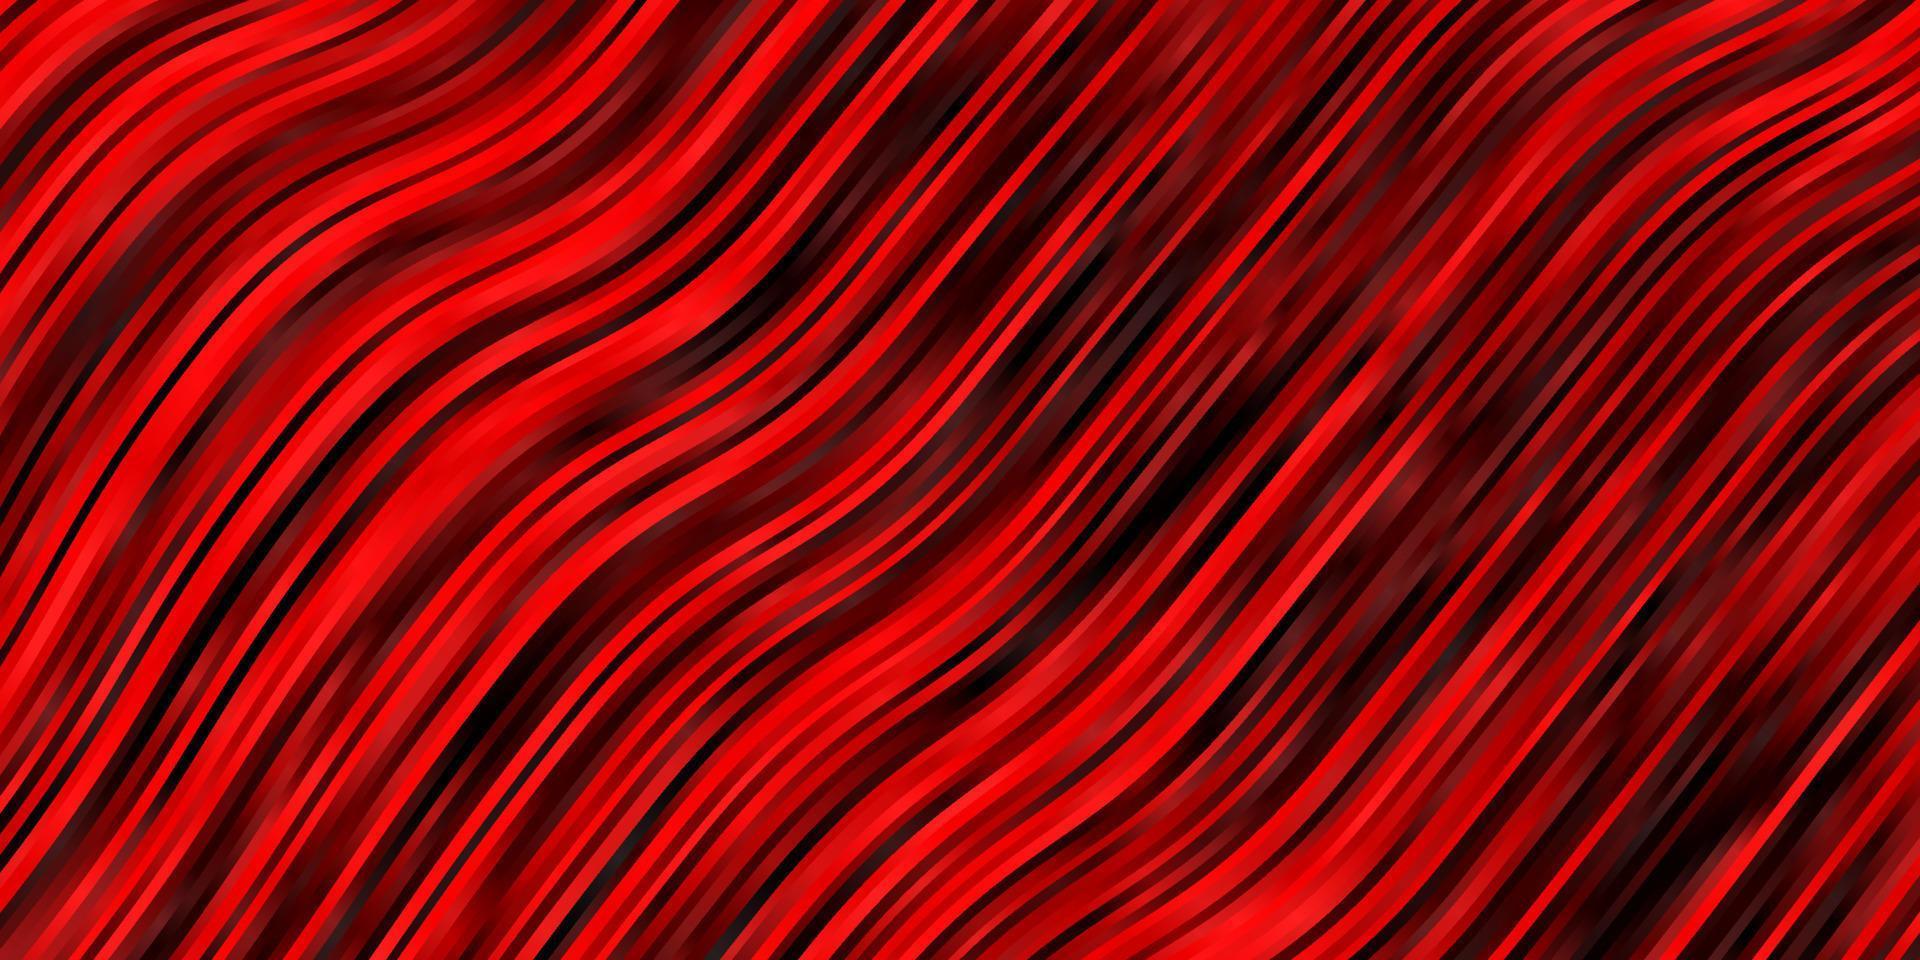 sfondo vettoriale rosso scuro con linee curve.